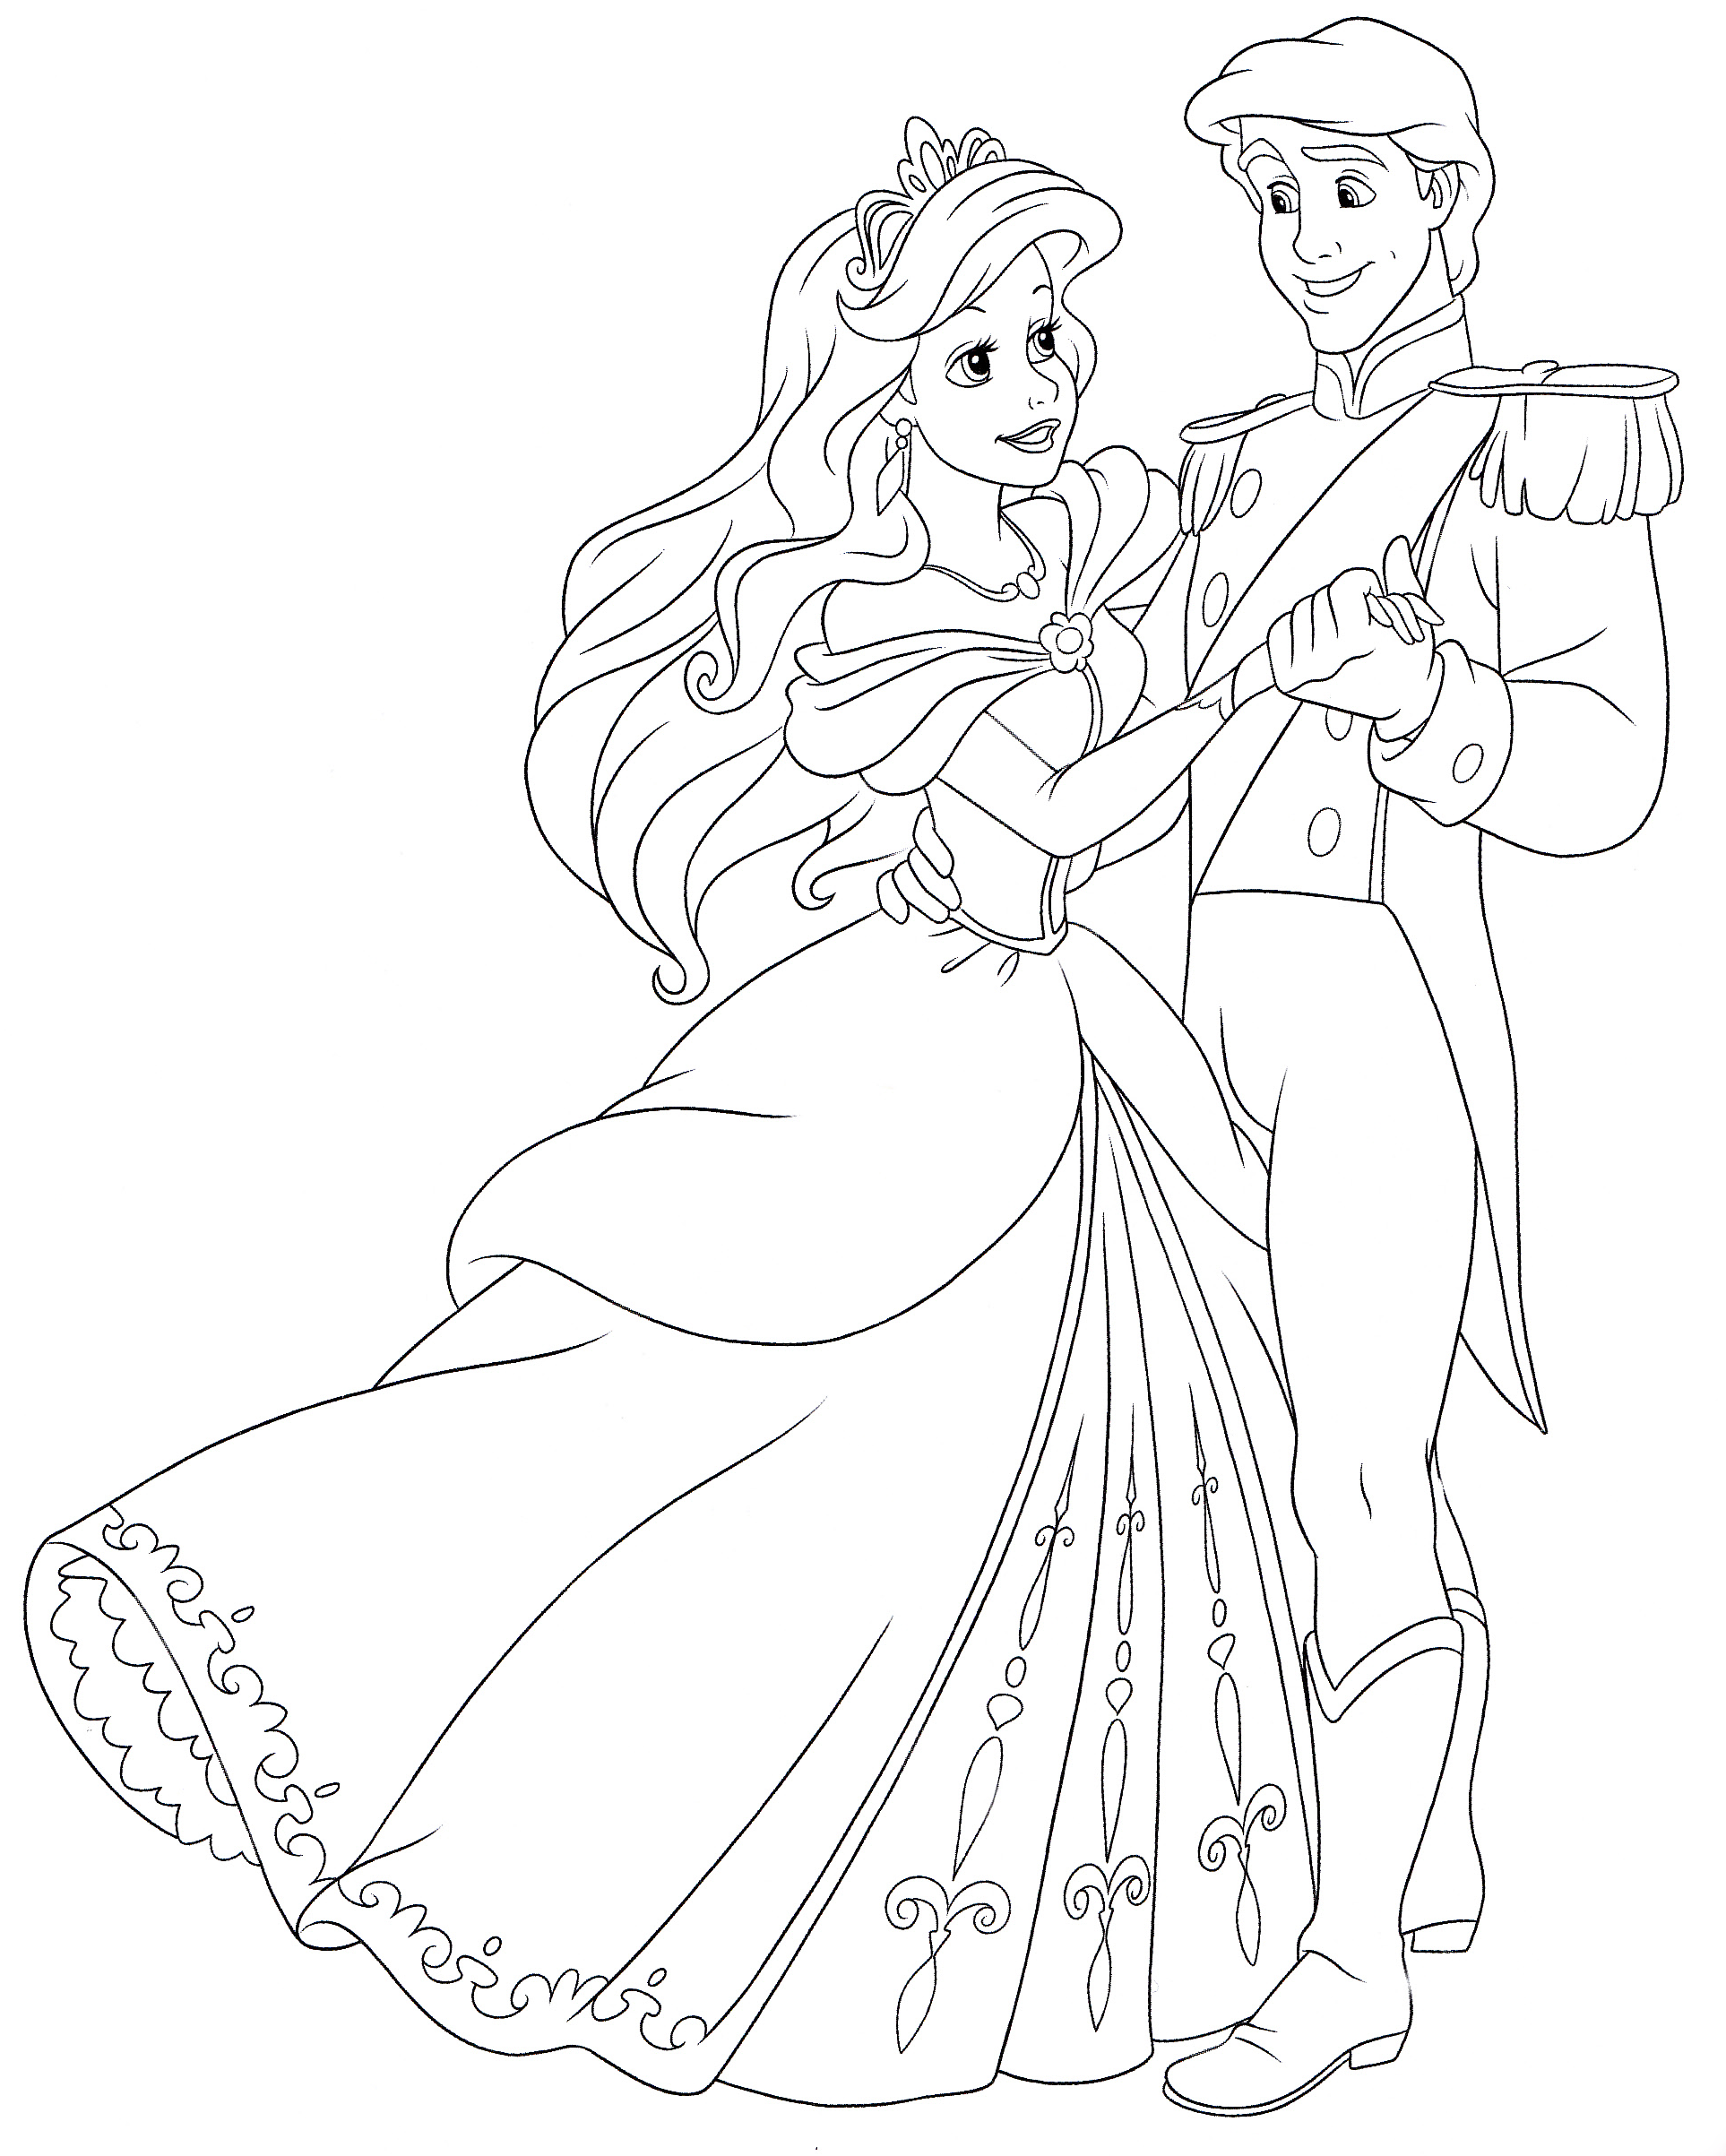 Tranh tô màu công chúa Ariel xinh đẹp khiêu vũ cùng hoàng tử